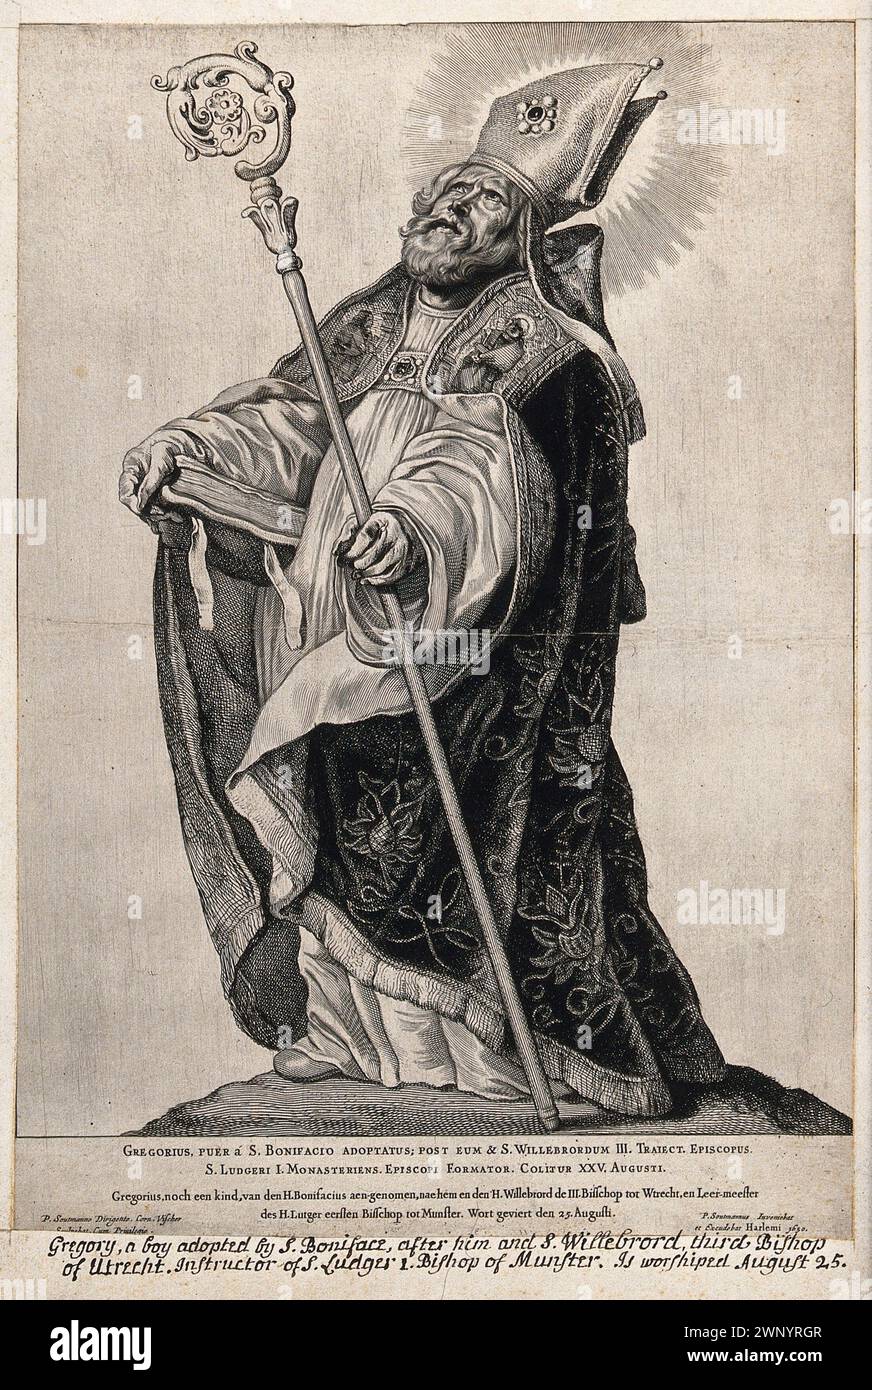 Un'incisione del 1650 di Papa Gregorio i (noto anche come San Gregorio Magno) che fu pontefice dall'AD590 all'AD604. Era il 64° papa. Fu lui che introdusse il canto semplice noto come canto gregoriano. Foto Stock